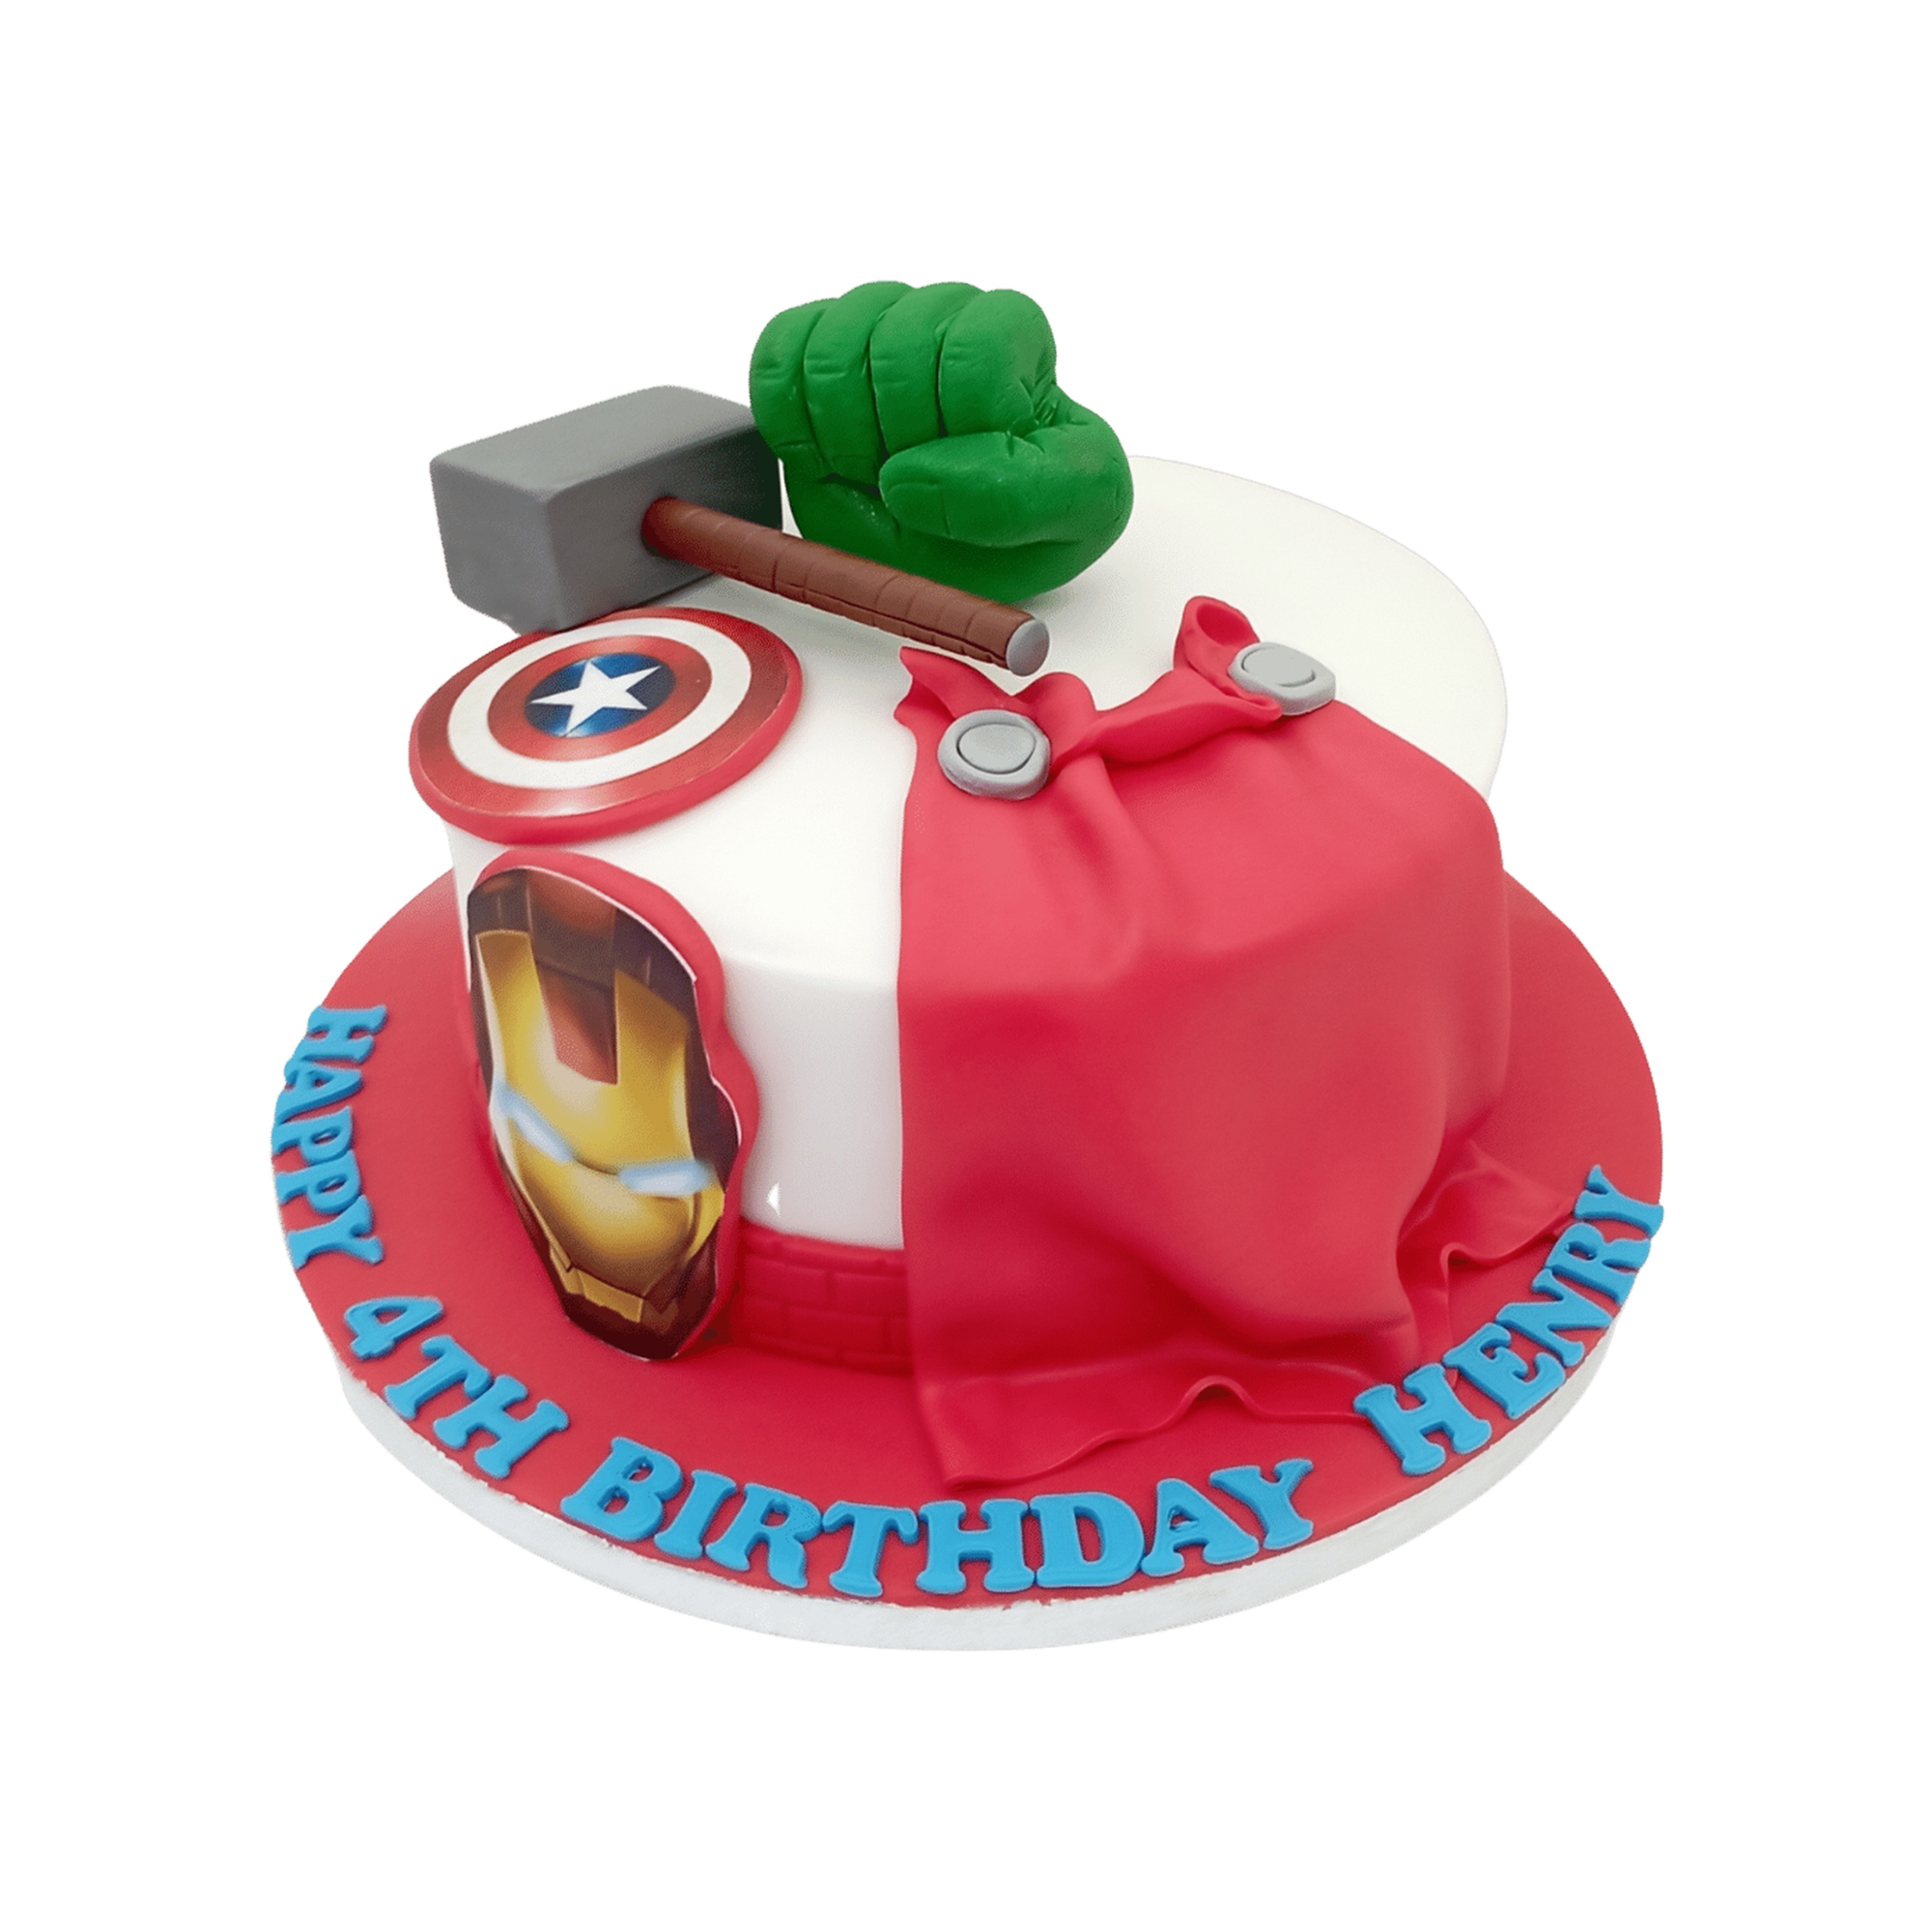 Superheroes Avengers Birthday Cake For Kids 